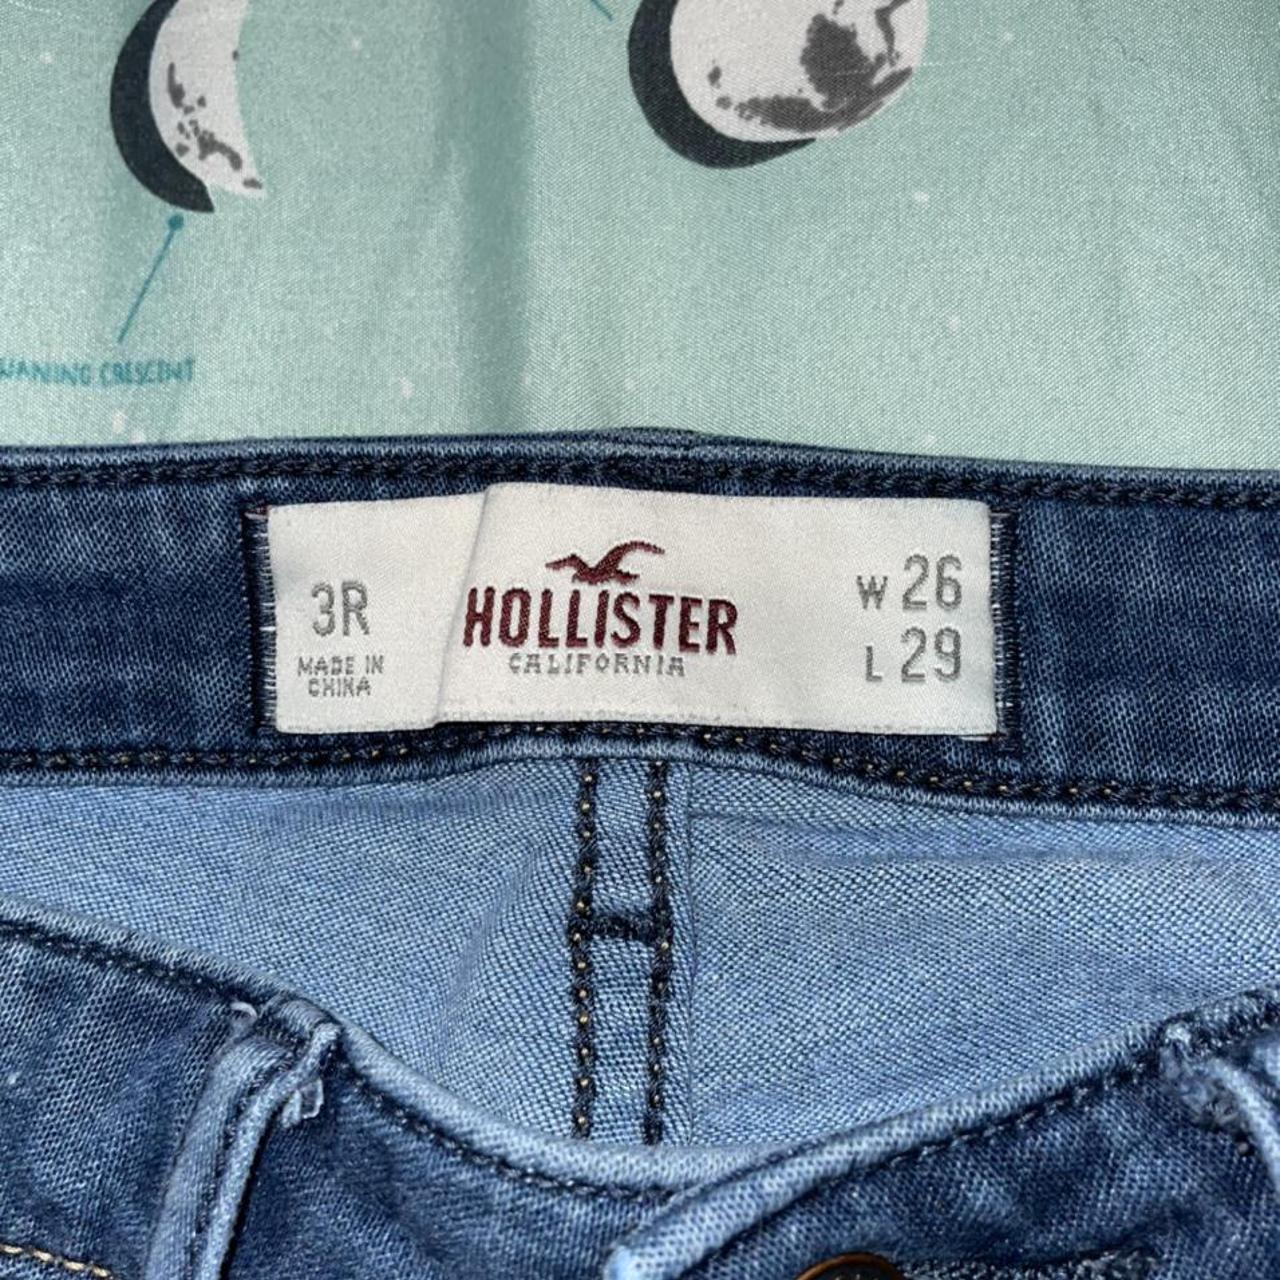 Hollister skinny jeans! 💙🦅 #Hollister #jeggings - Depop